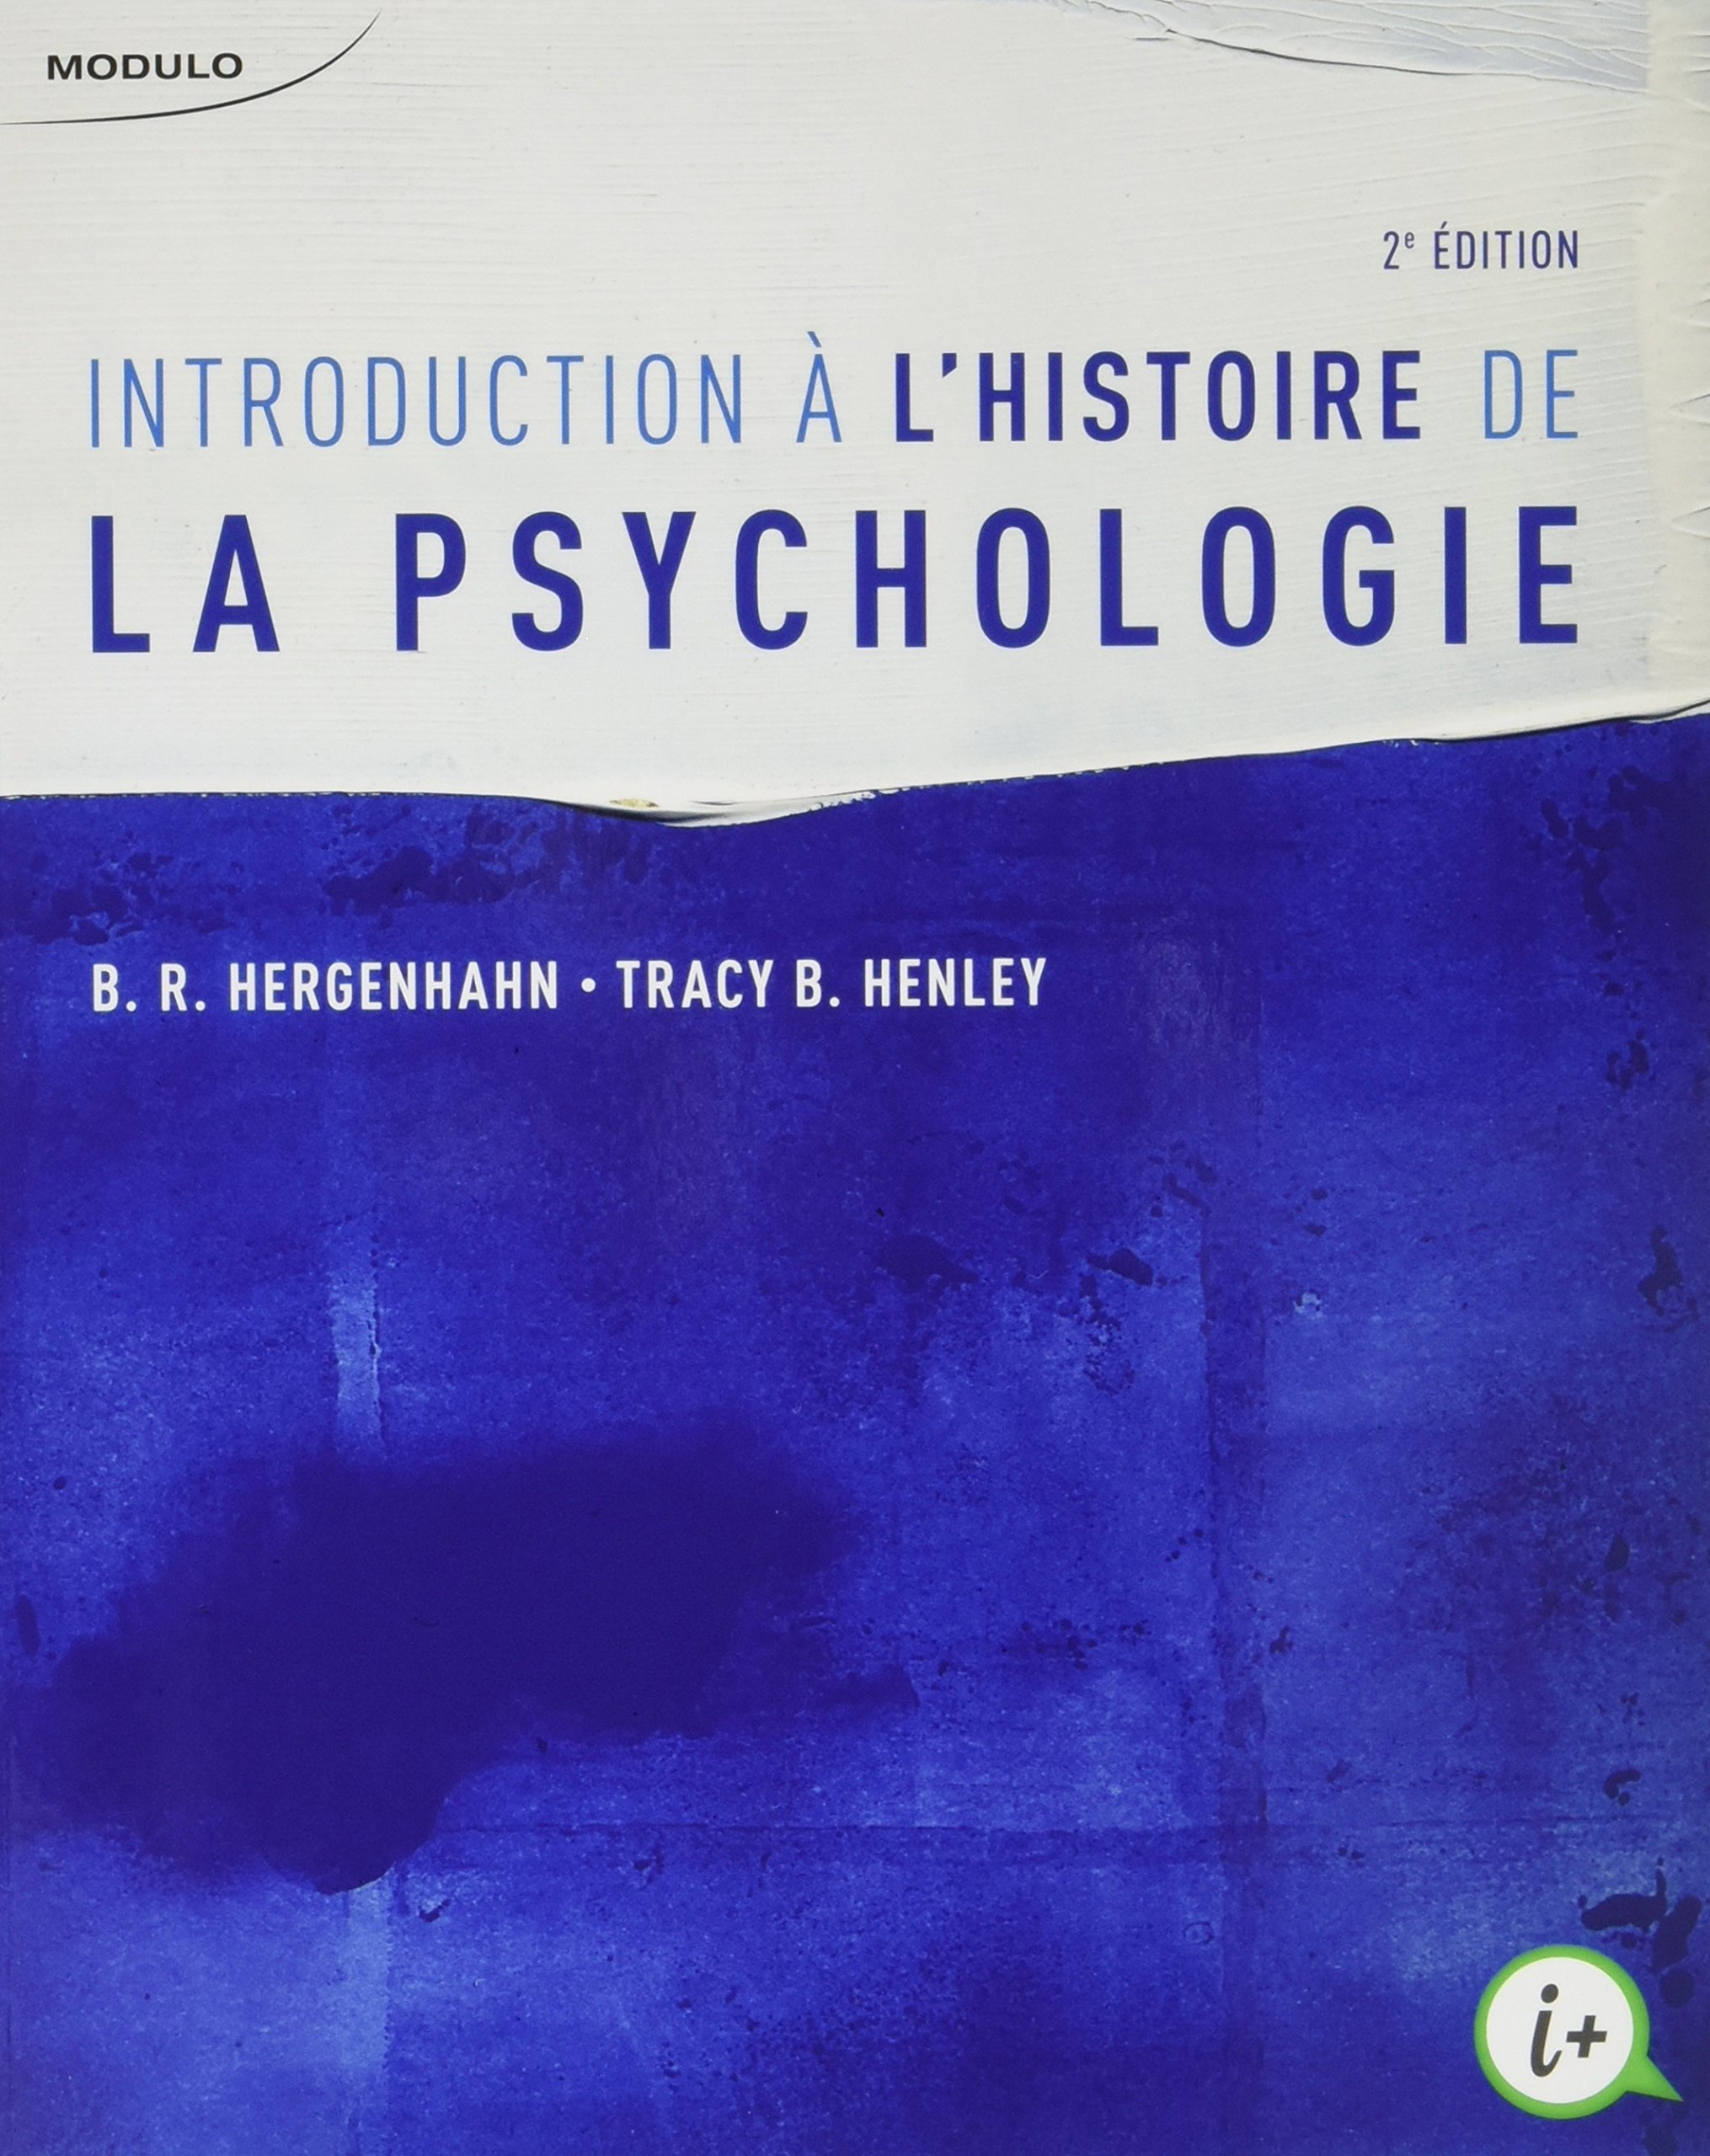 Introduction à l'histoire de la psychologie